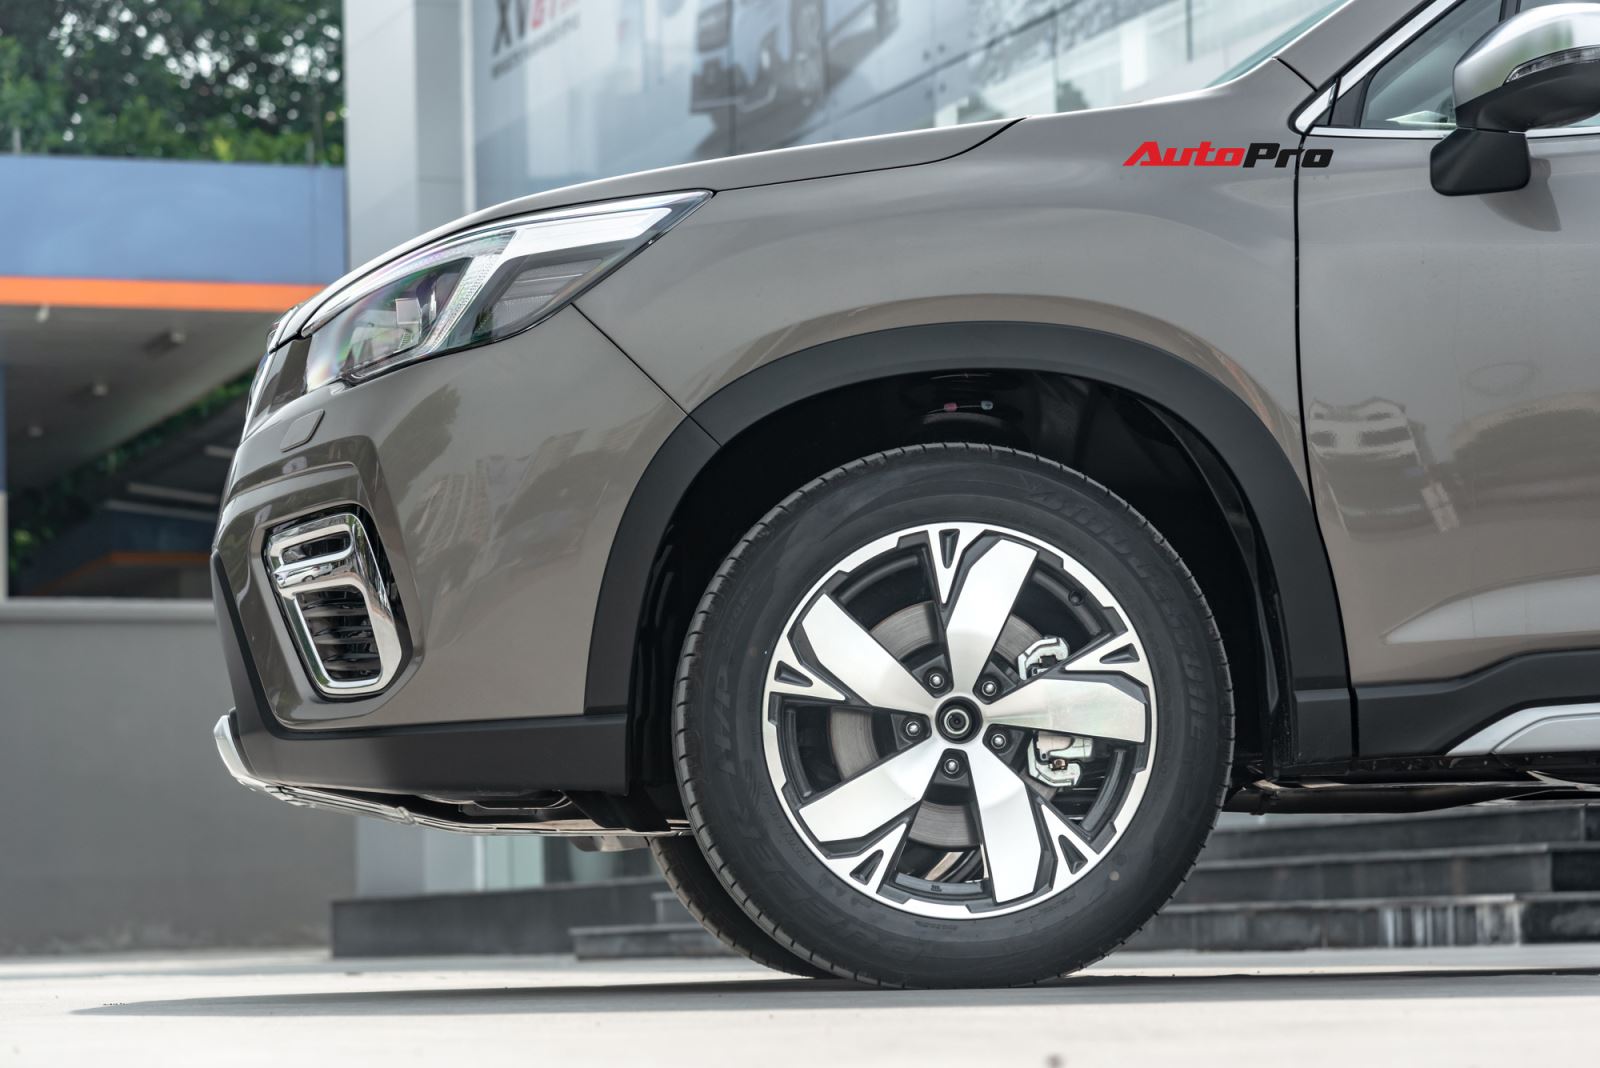 Đánh giá nhanh Subaru Forester 2019: Cơ hội trước Honda CR-V và Mazda CX-5? 5